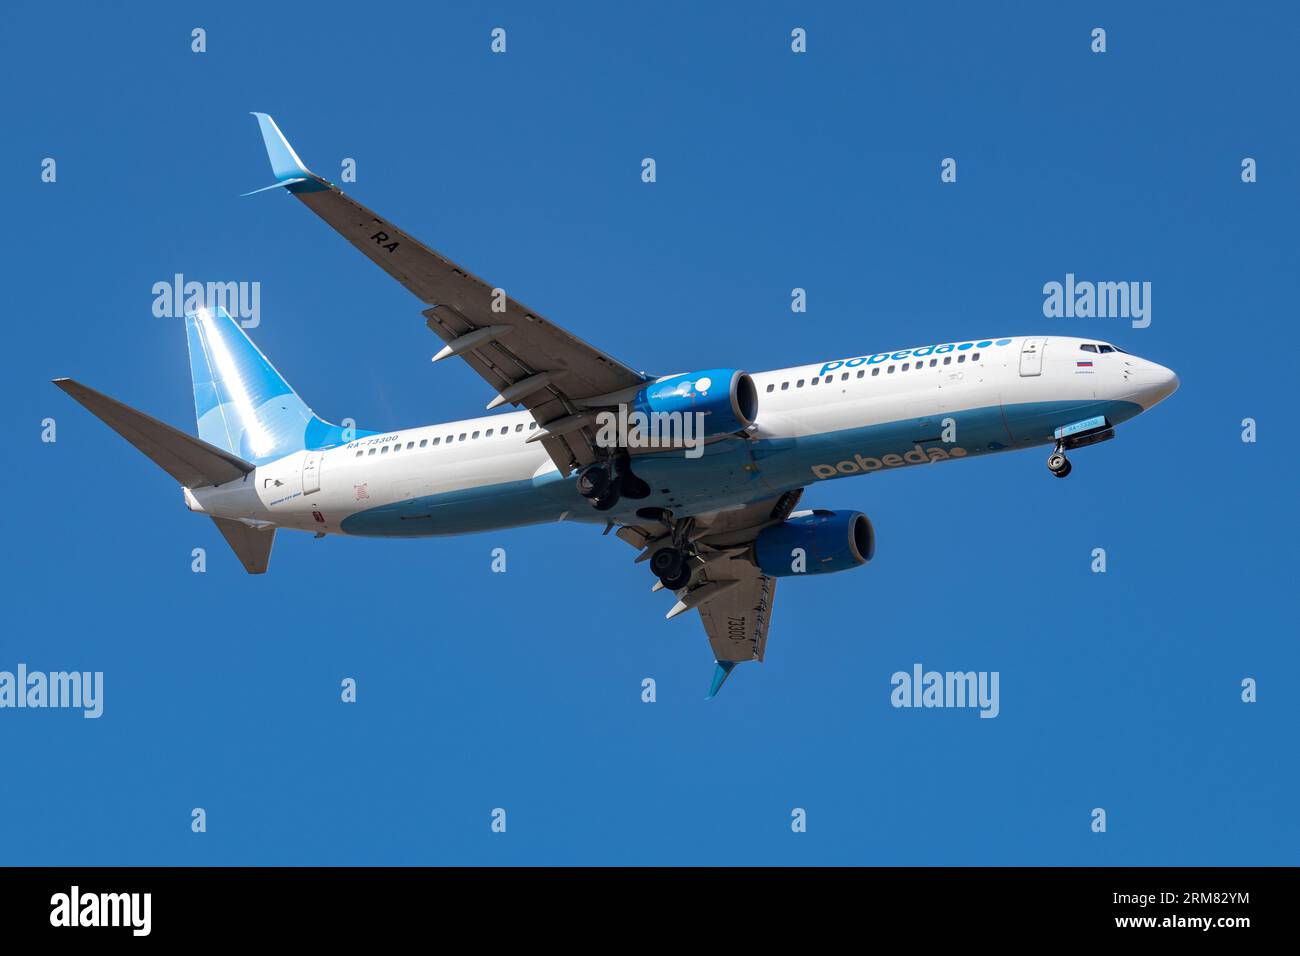 SANKT PETERSBURG, RUSSLAND - 14. APRIL 2023: Boeing 737-800 (RA-73300) von Pobeda Airlines auf Gleitbahn in blauem wolkenlosem Himmel Stockfoto